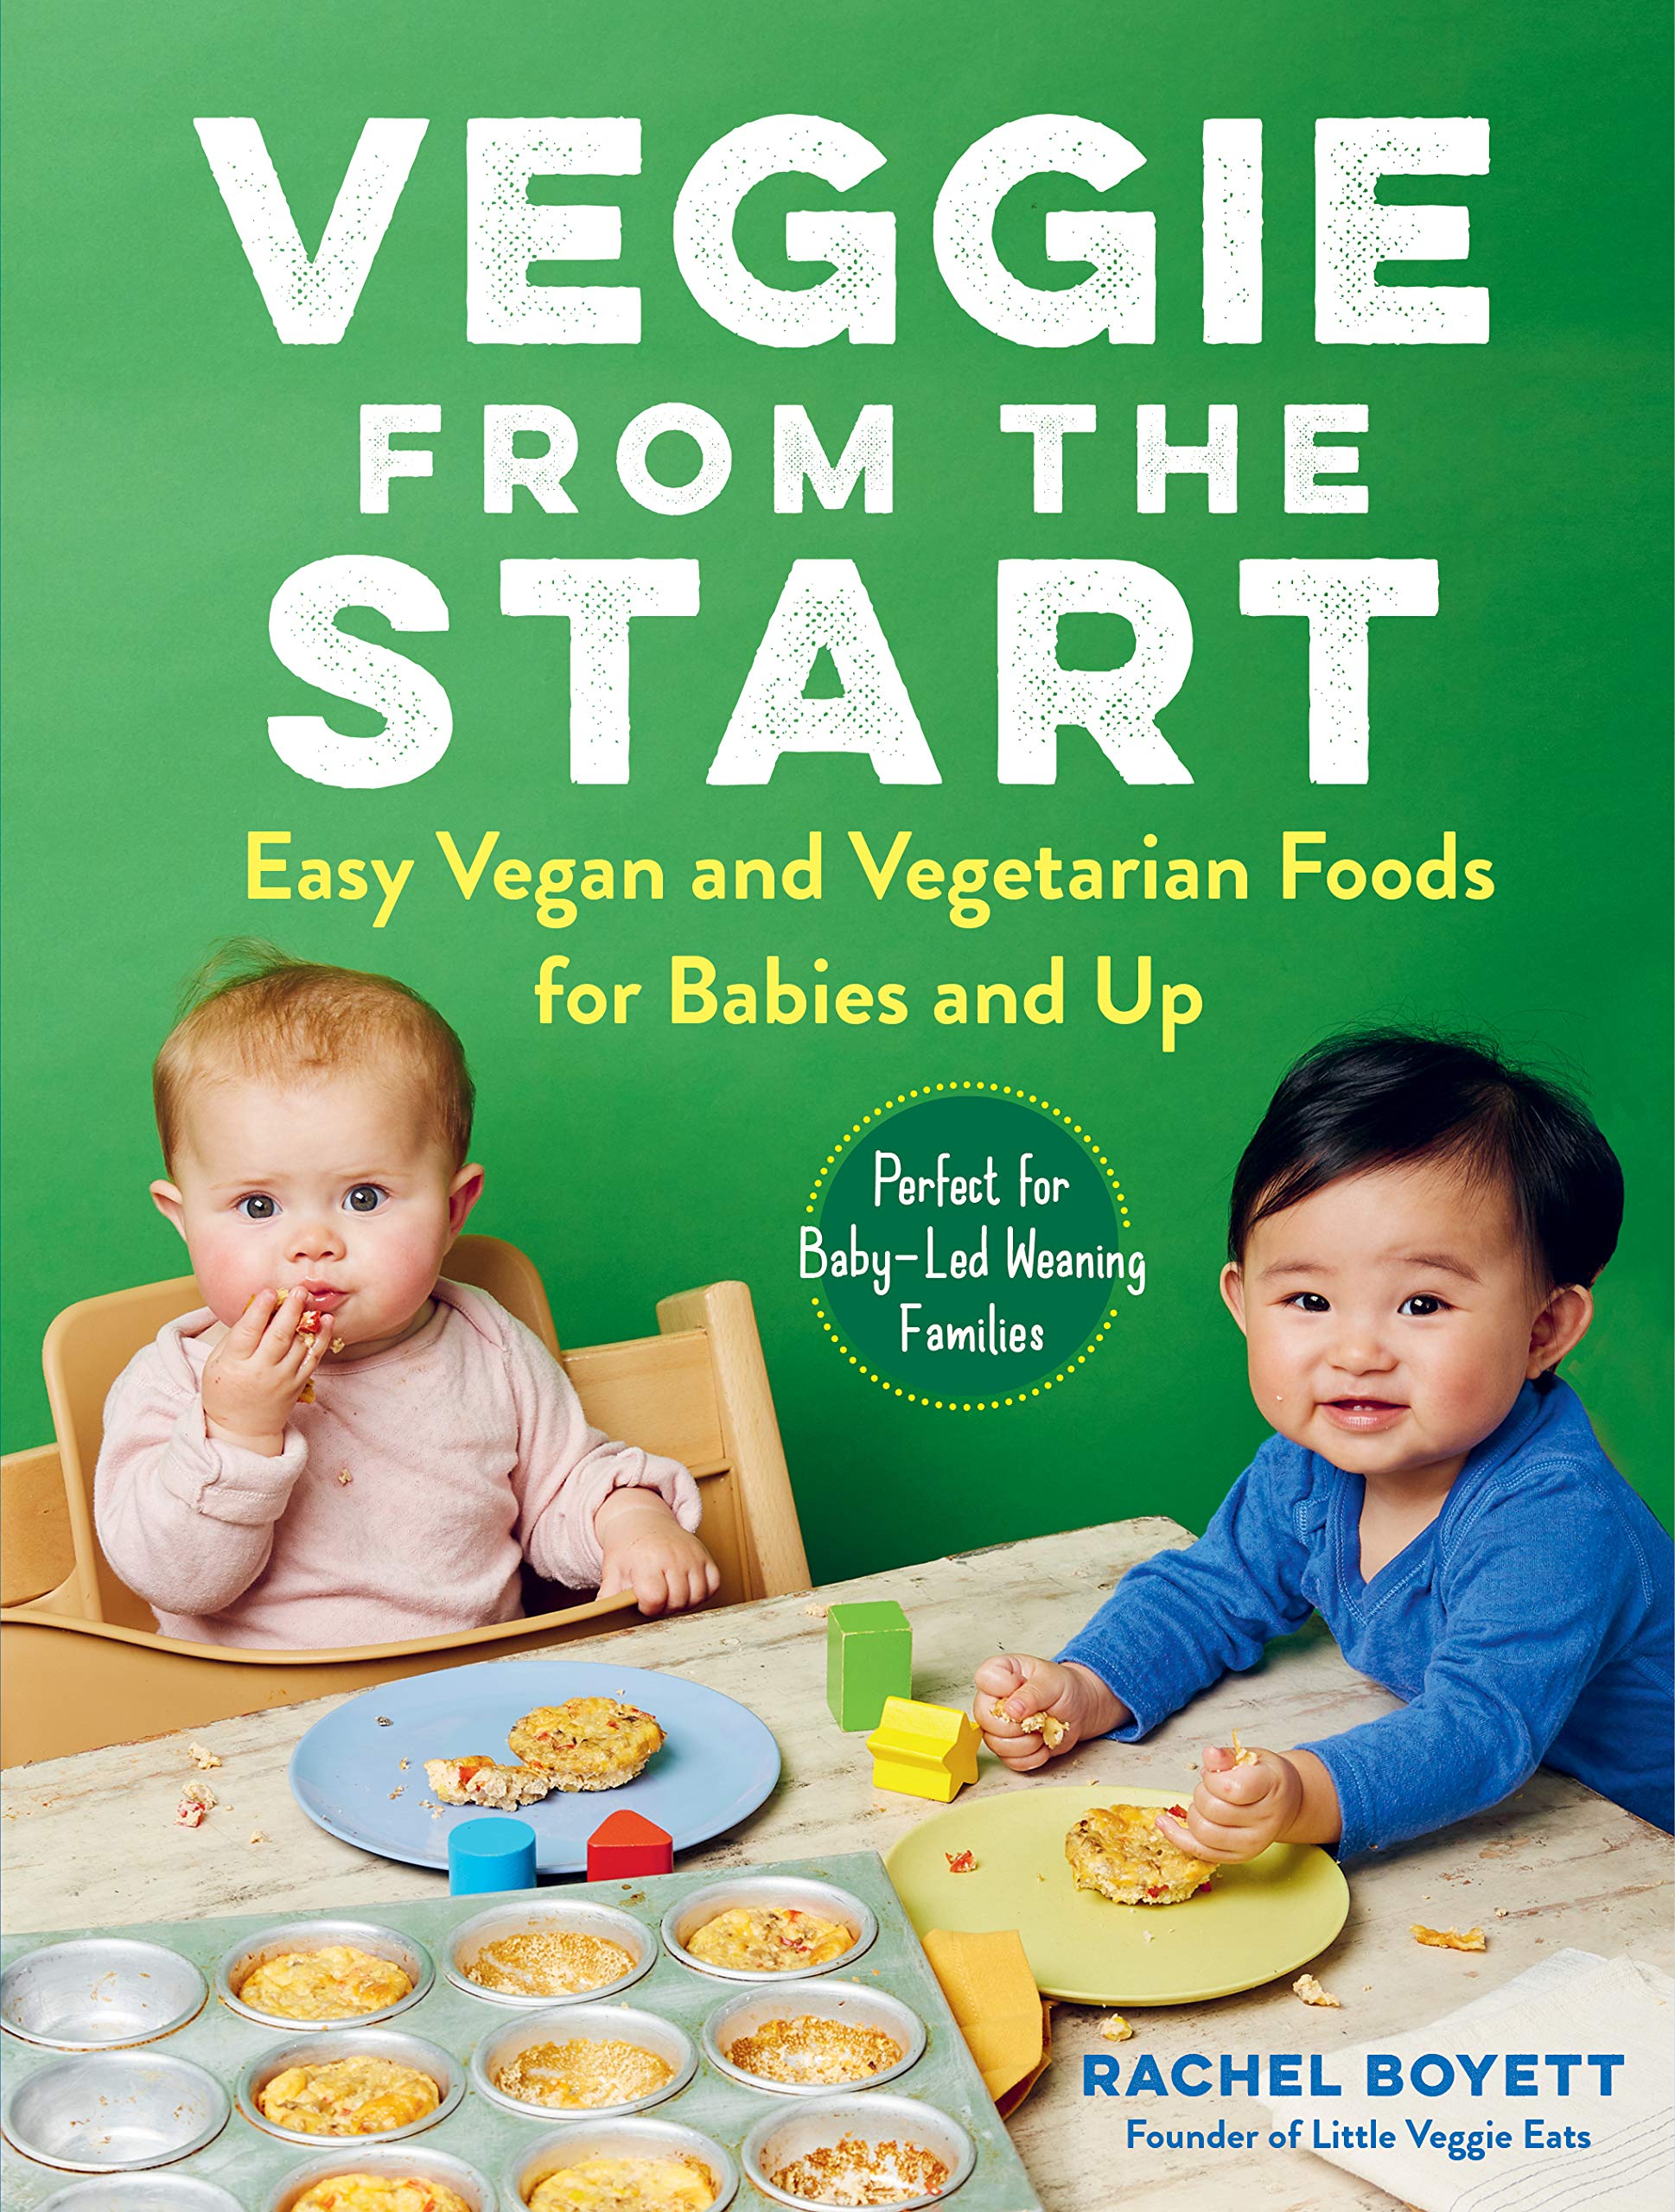 Veggie from the Start: Easy Vegan and Vegetarian Foods for Babies and Up (Rachel Boyett)